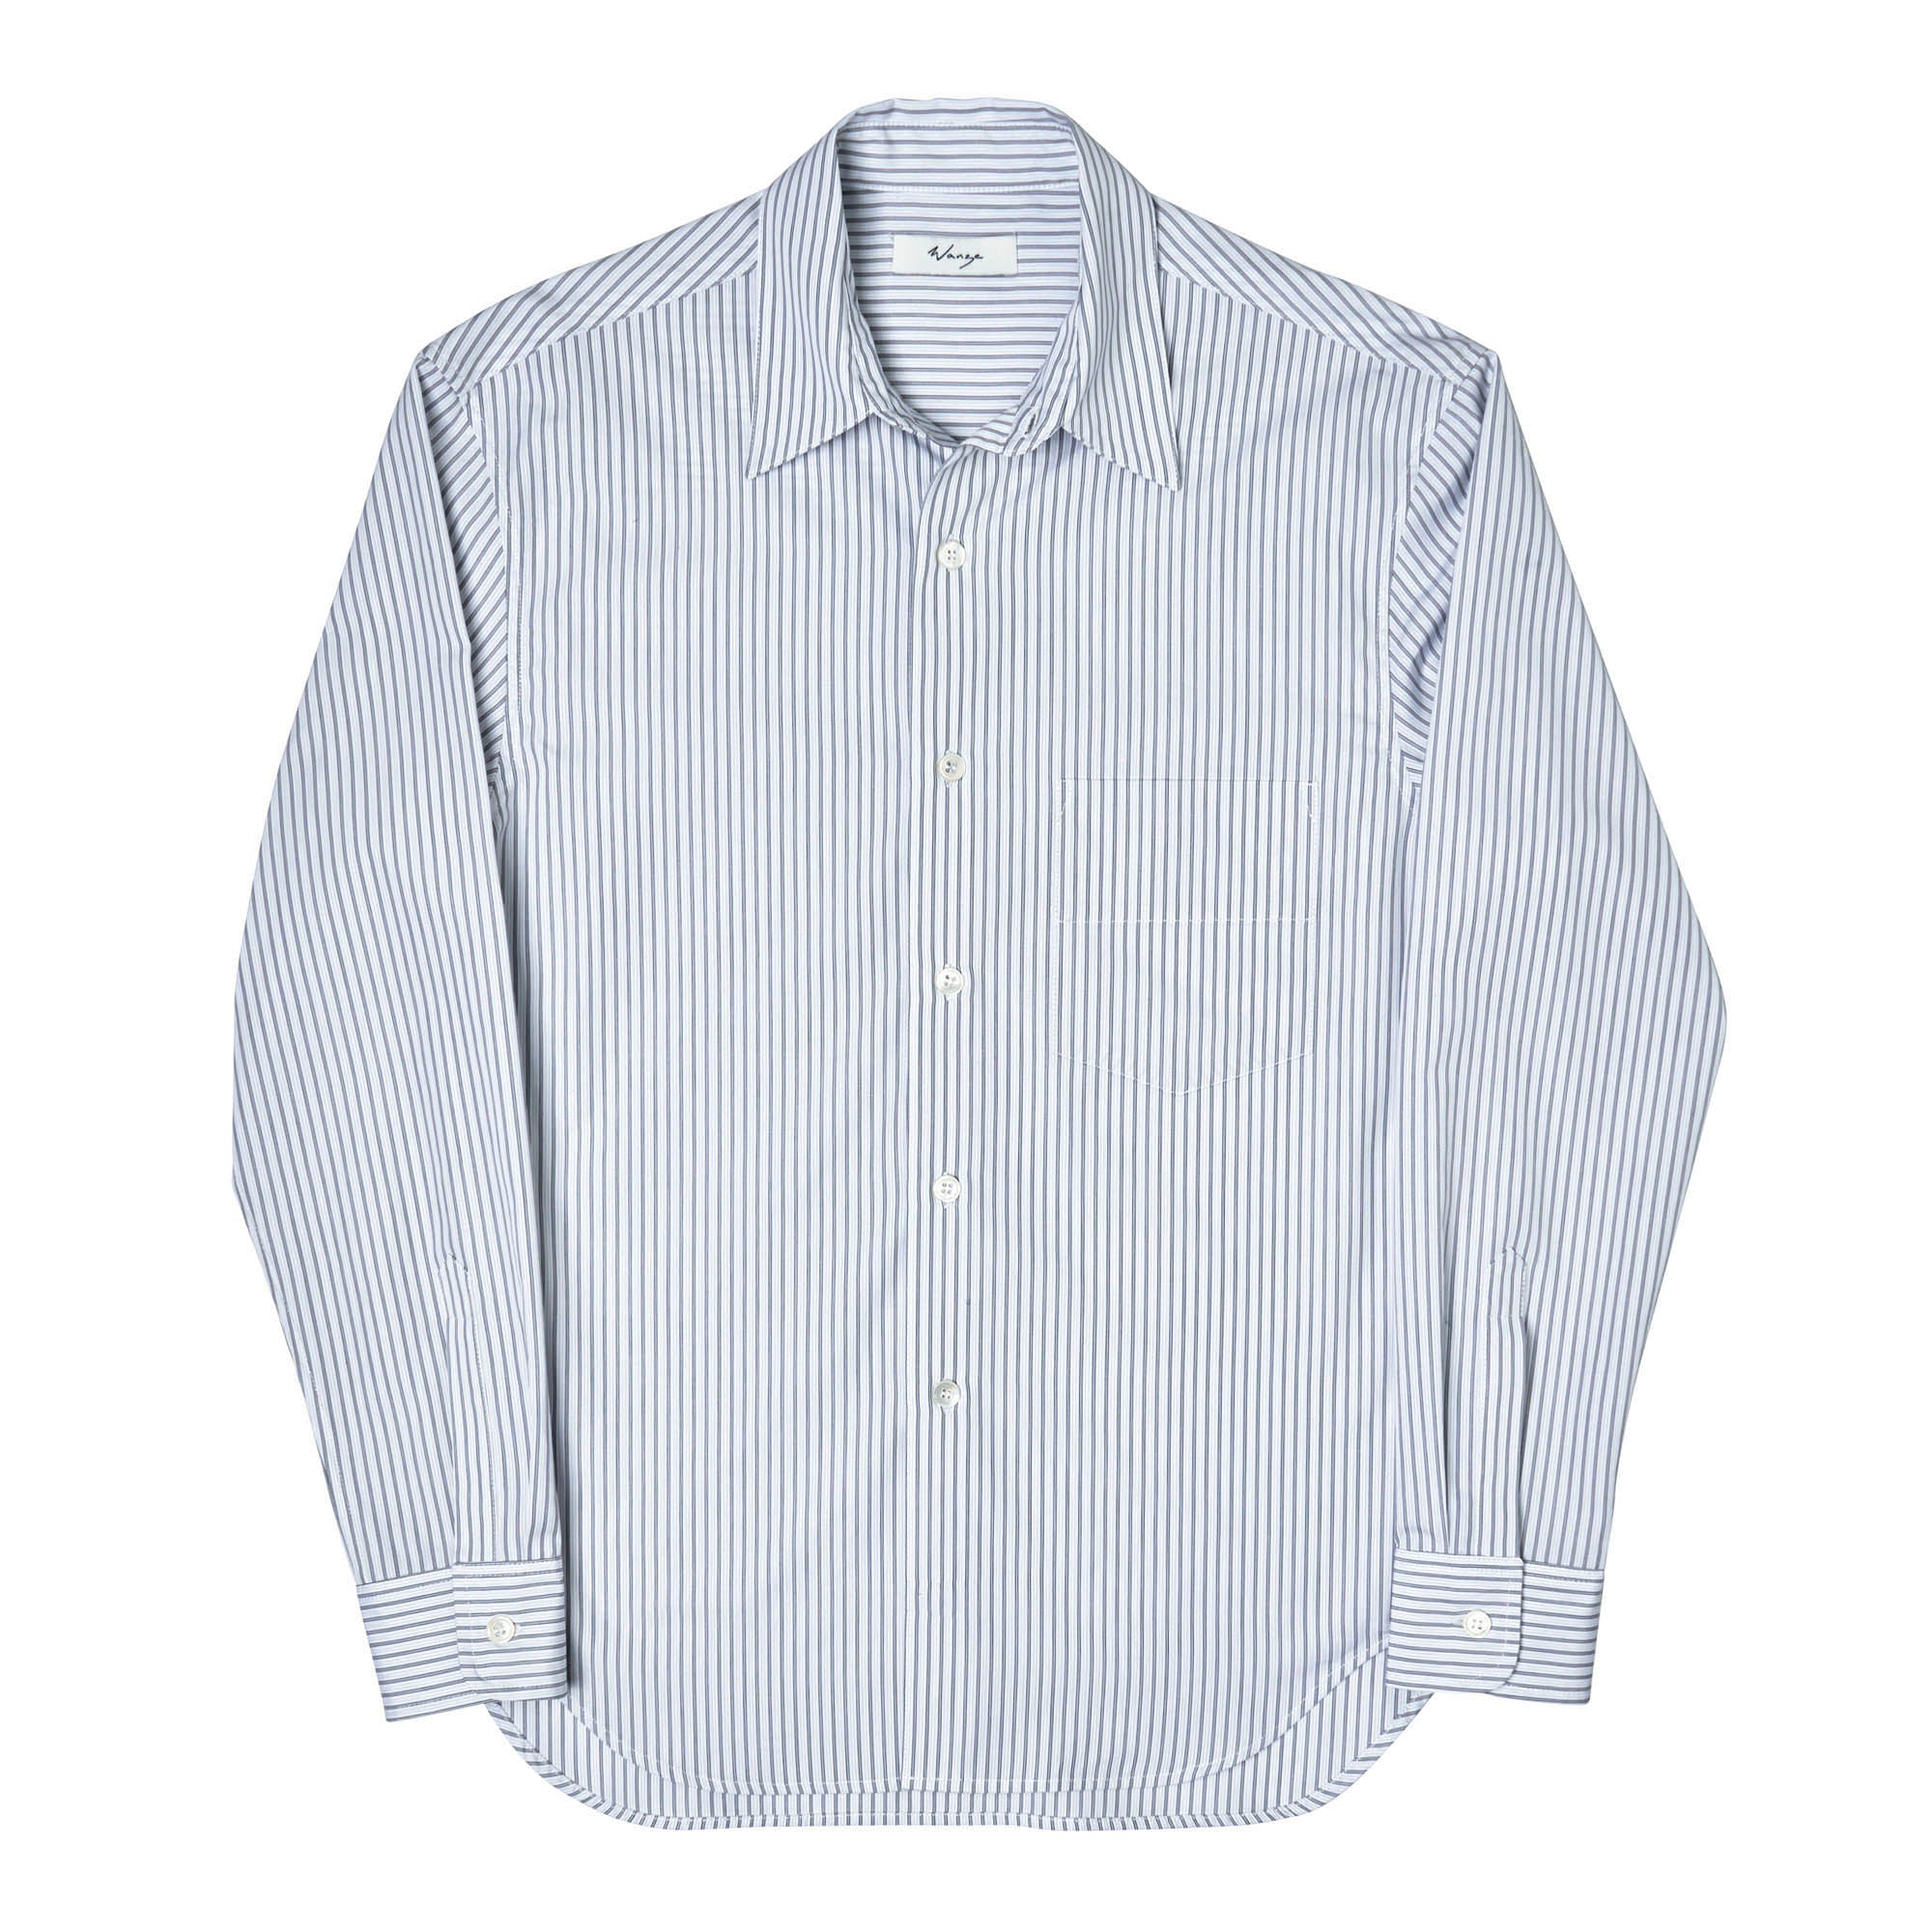 Slim Fit Button Up Shirt (Men) Cotton Poplin White Pinstripe - PREORDER